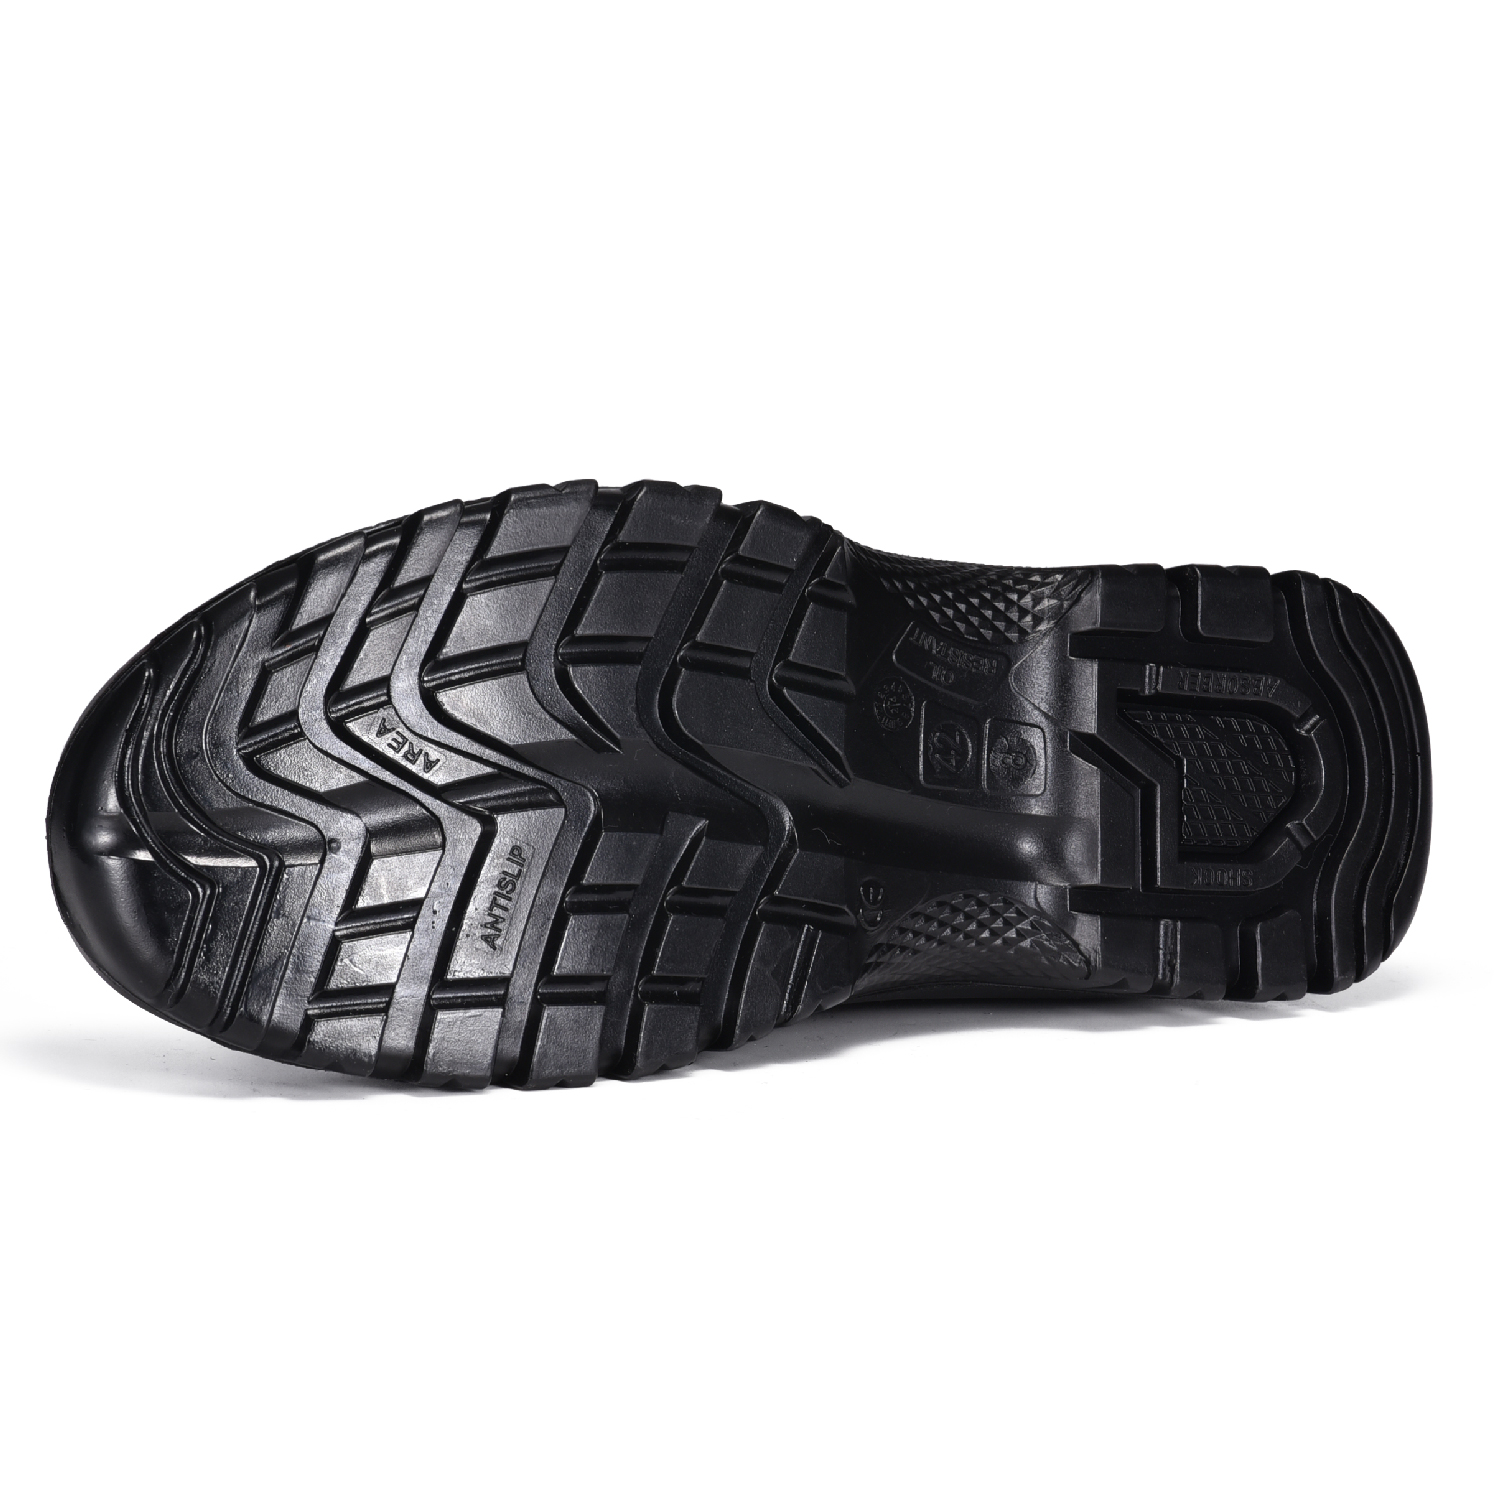 Zapatos de verano ligeros y transpirables con punta de acero L-7540 Gris